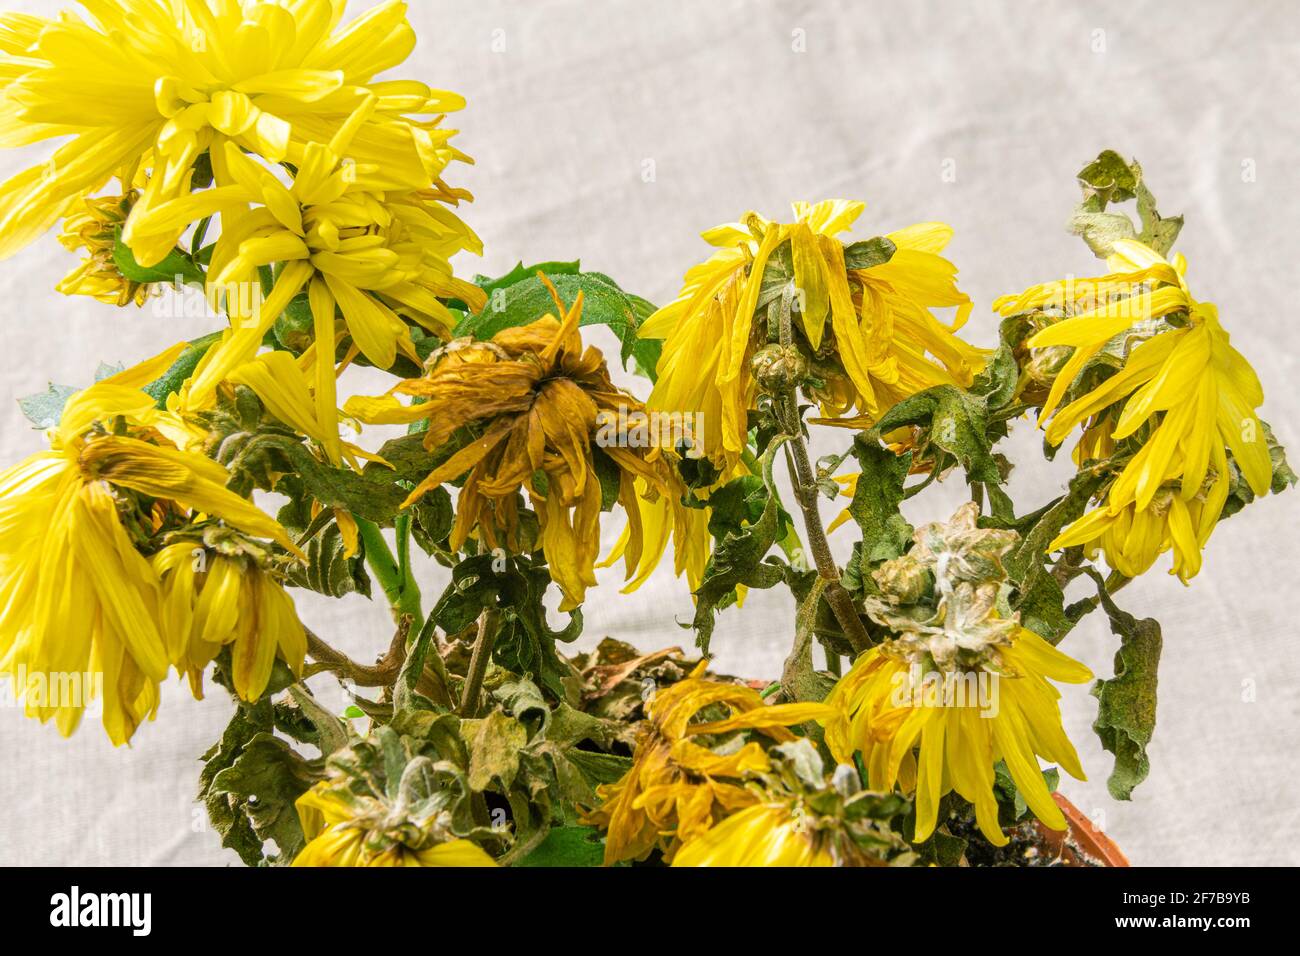 Eine sterbende Zimmerpflanze mit verwelkten gelben Blüten. Innen gelbe Chrysantheme stirbt, ungleichmäßiger grauer Hintergrund und selektiver Fokus Stockfoto